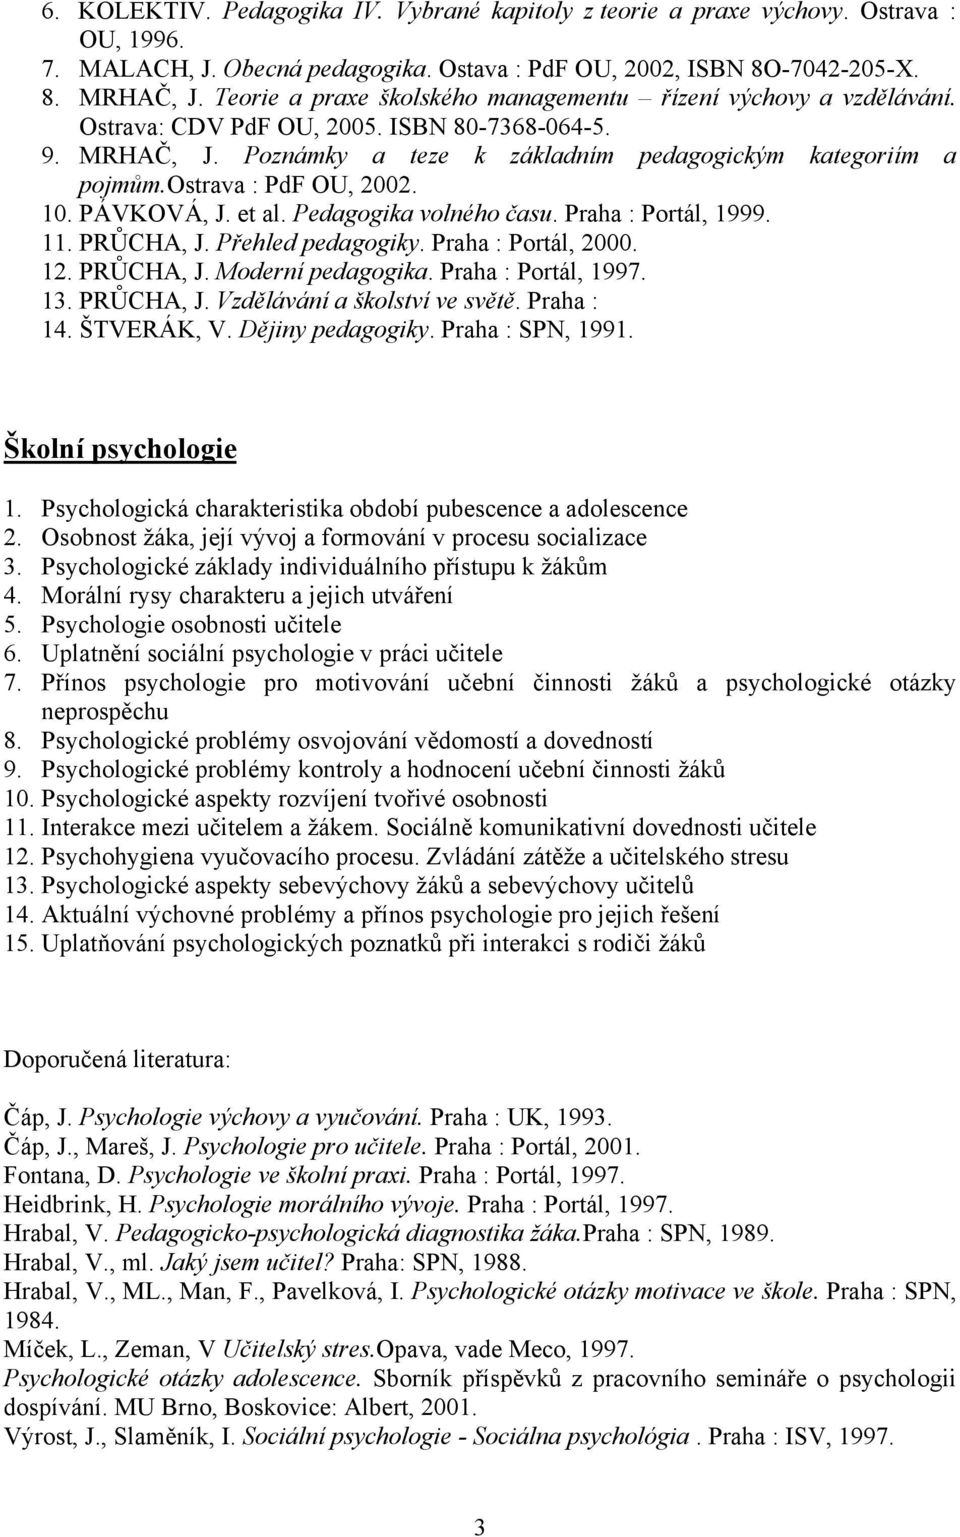 ostrava : PdF OU, 2002. 10. PÁVKOVÁ, J. et al. Pedagogika volného času. Praha : Portál, 1999. 11. PRŮCHA, J. Přehled pedagogiky. Praha : Portál, 2000. 12. PRŮCHA, J. Moderní pedagogika.